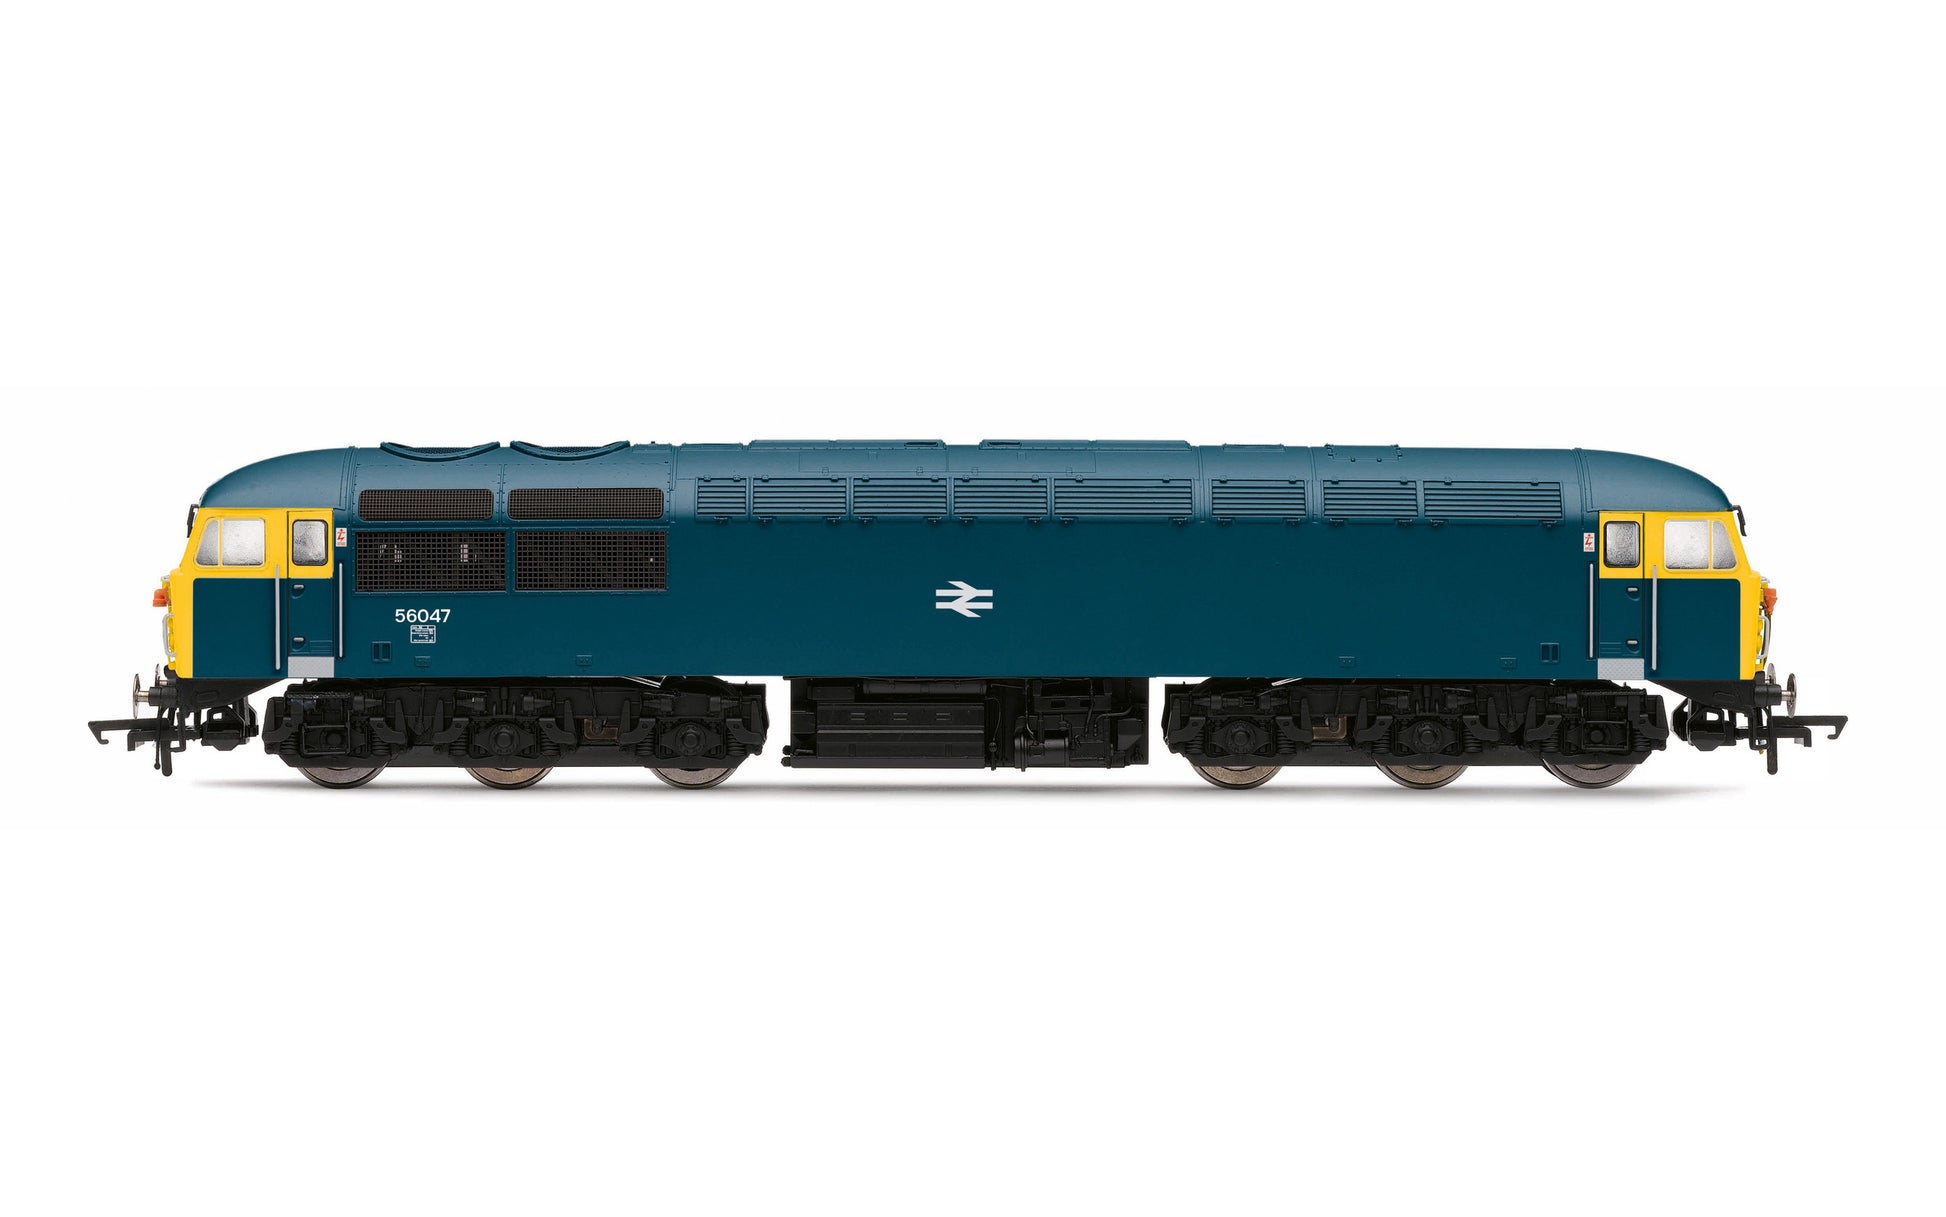 BR, Class 56, Co-Co, 56047 - Era 7 - Chester Model Centre